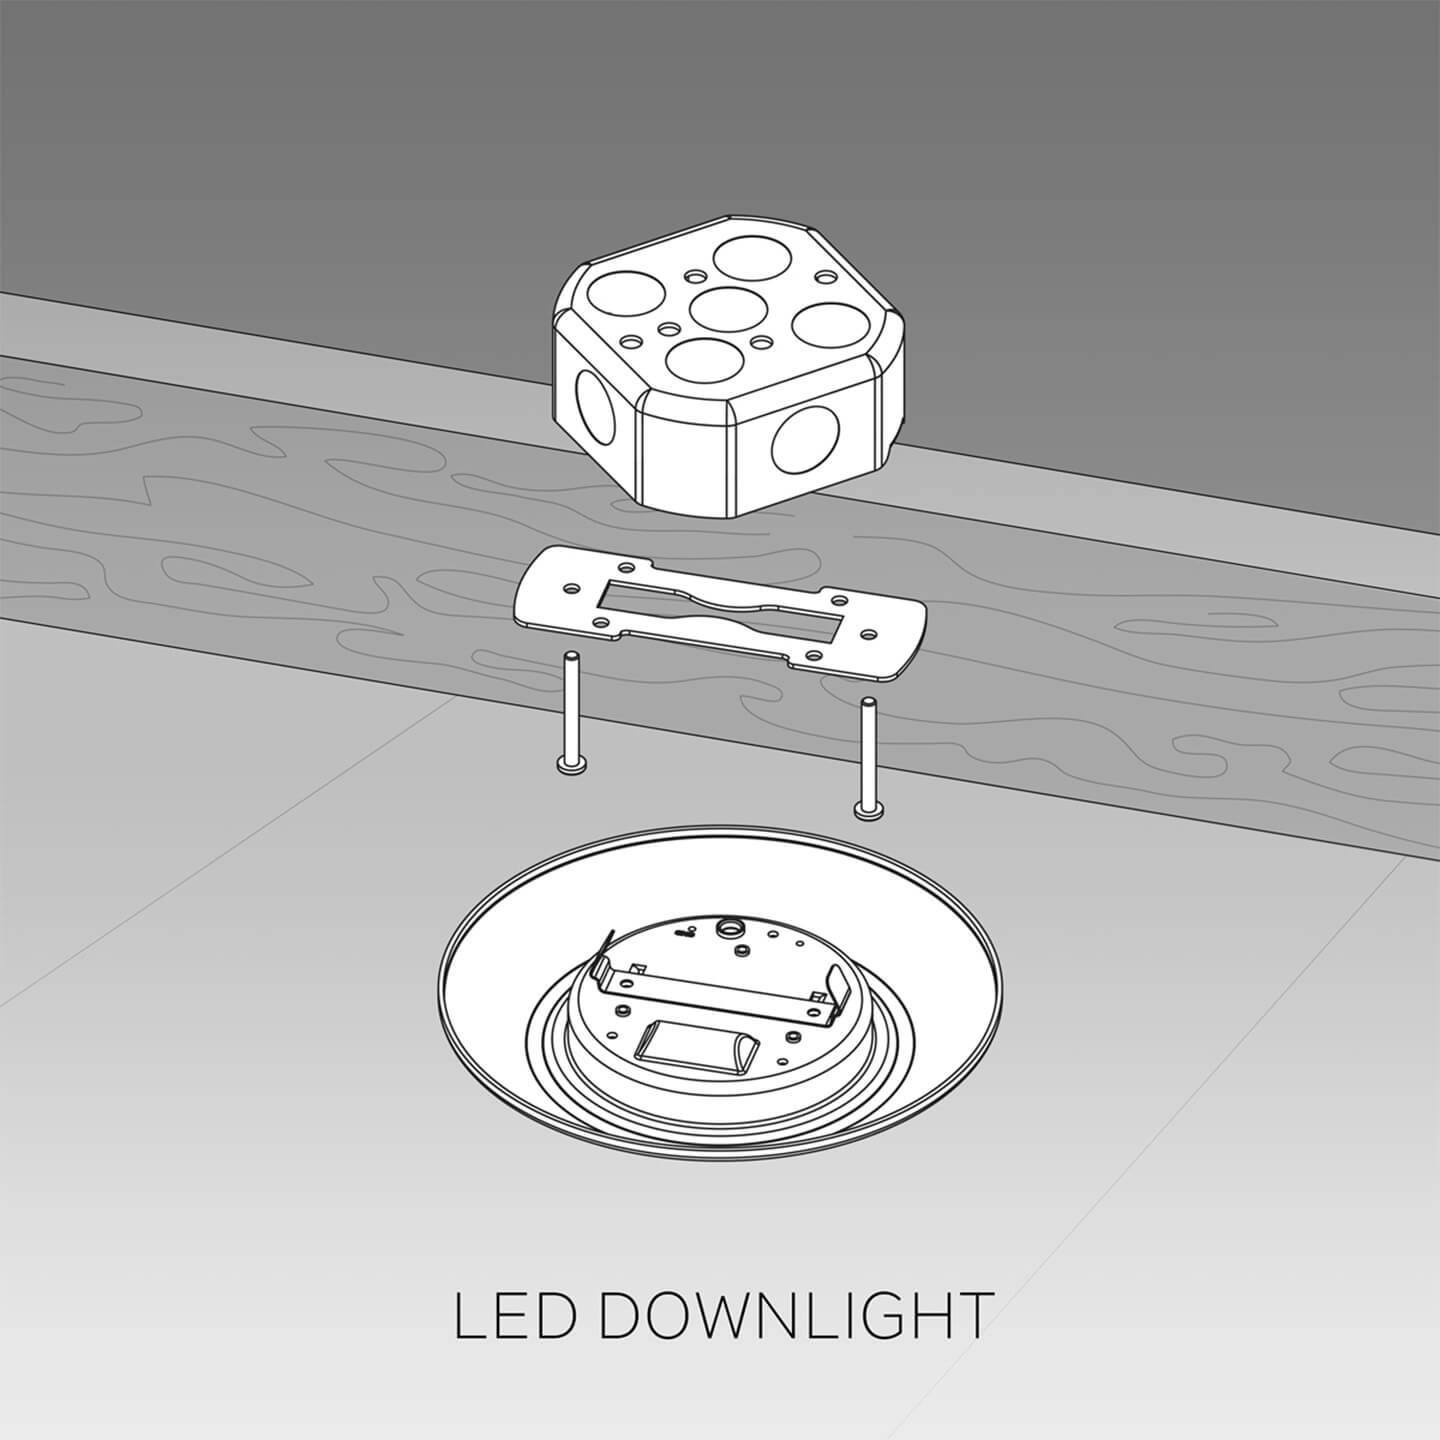 LED downlight installation illustration